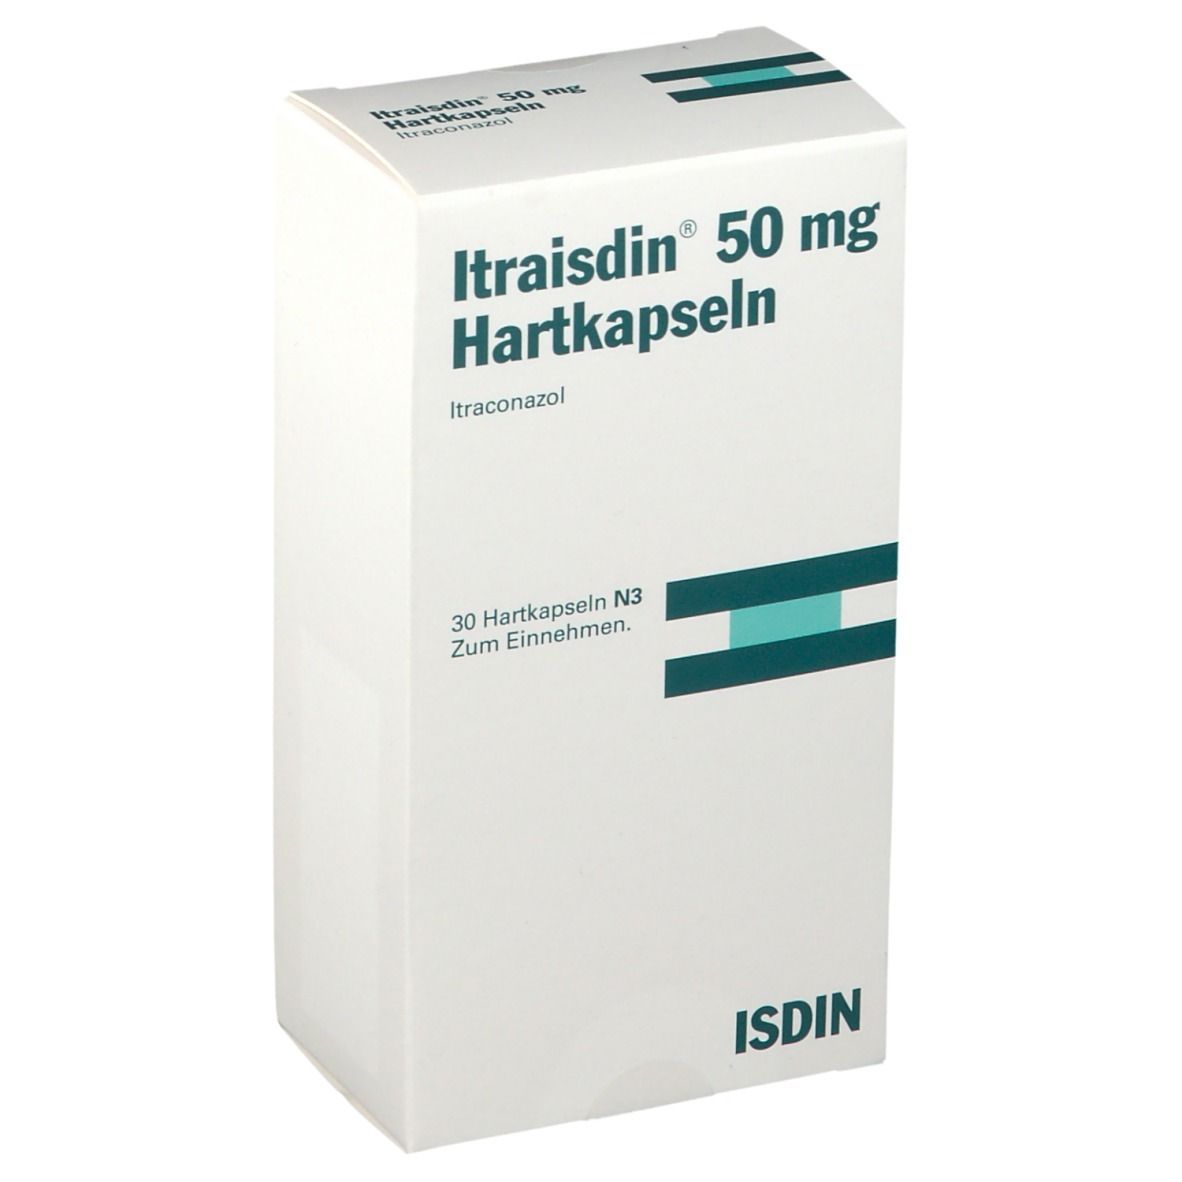 Itraisdin® 50 mg